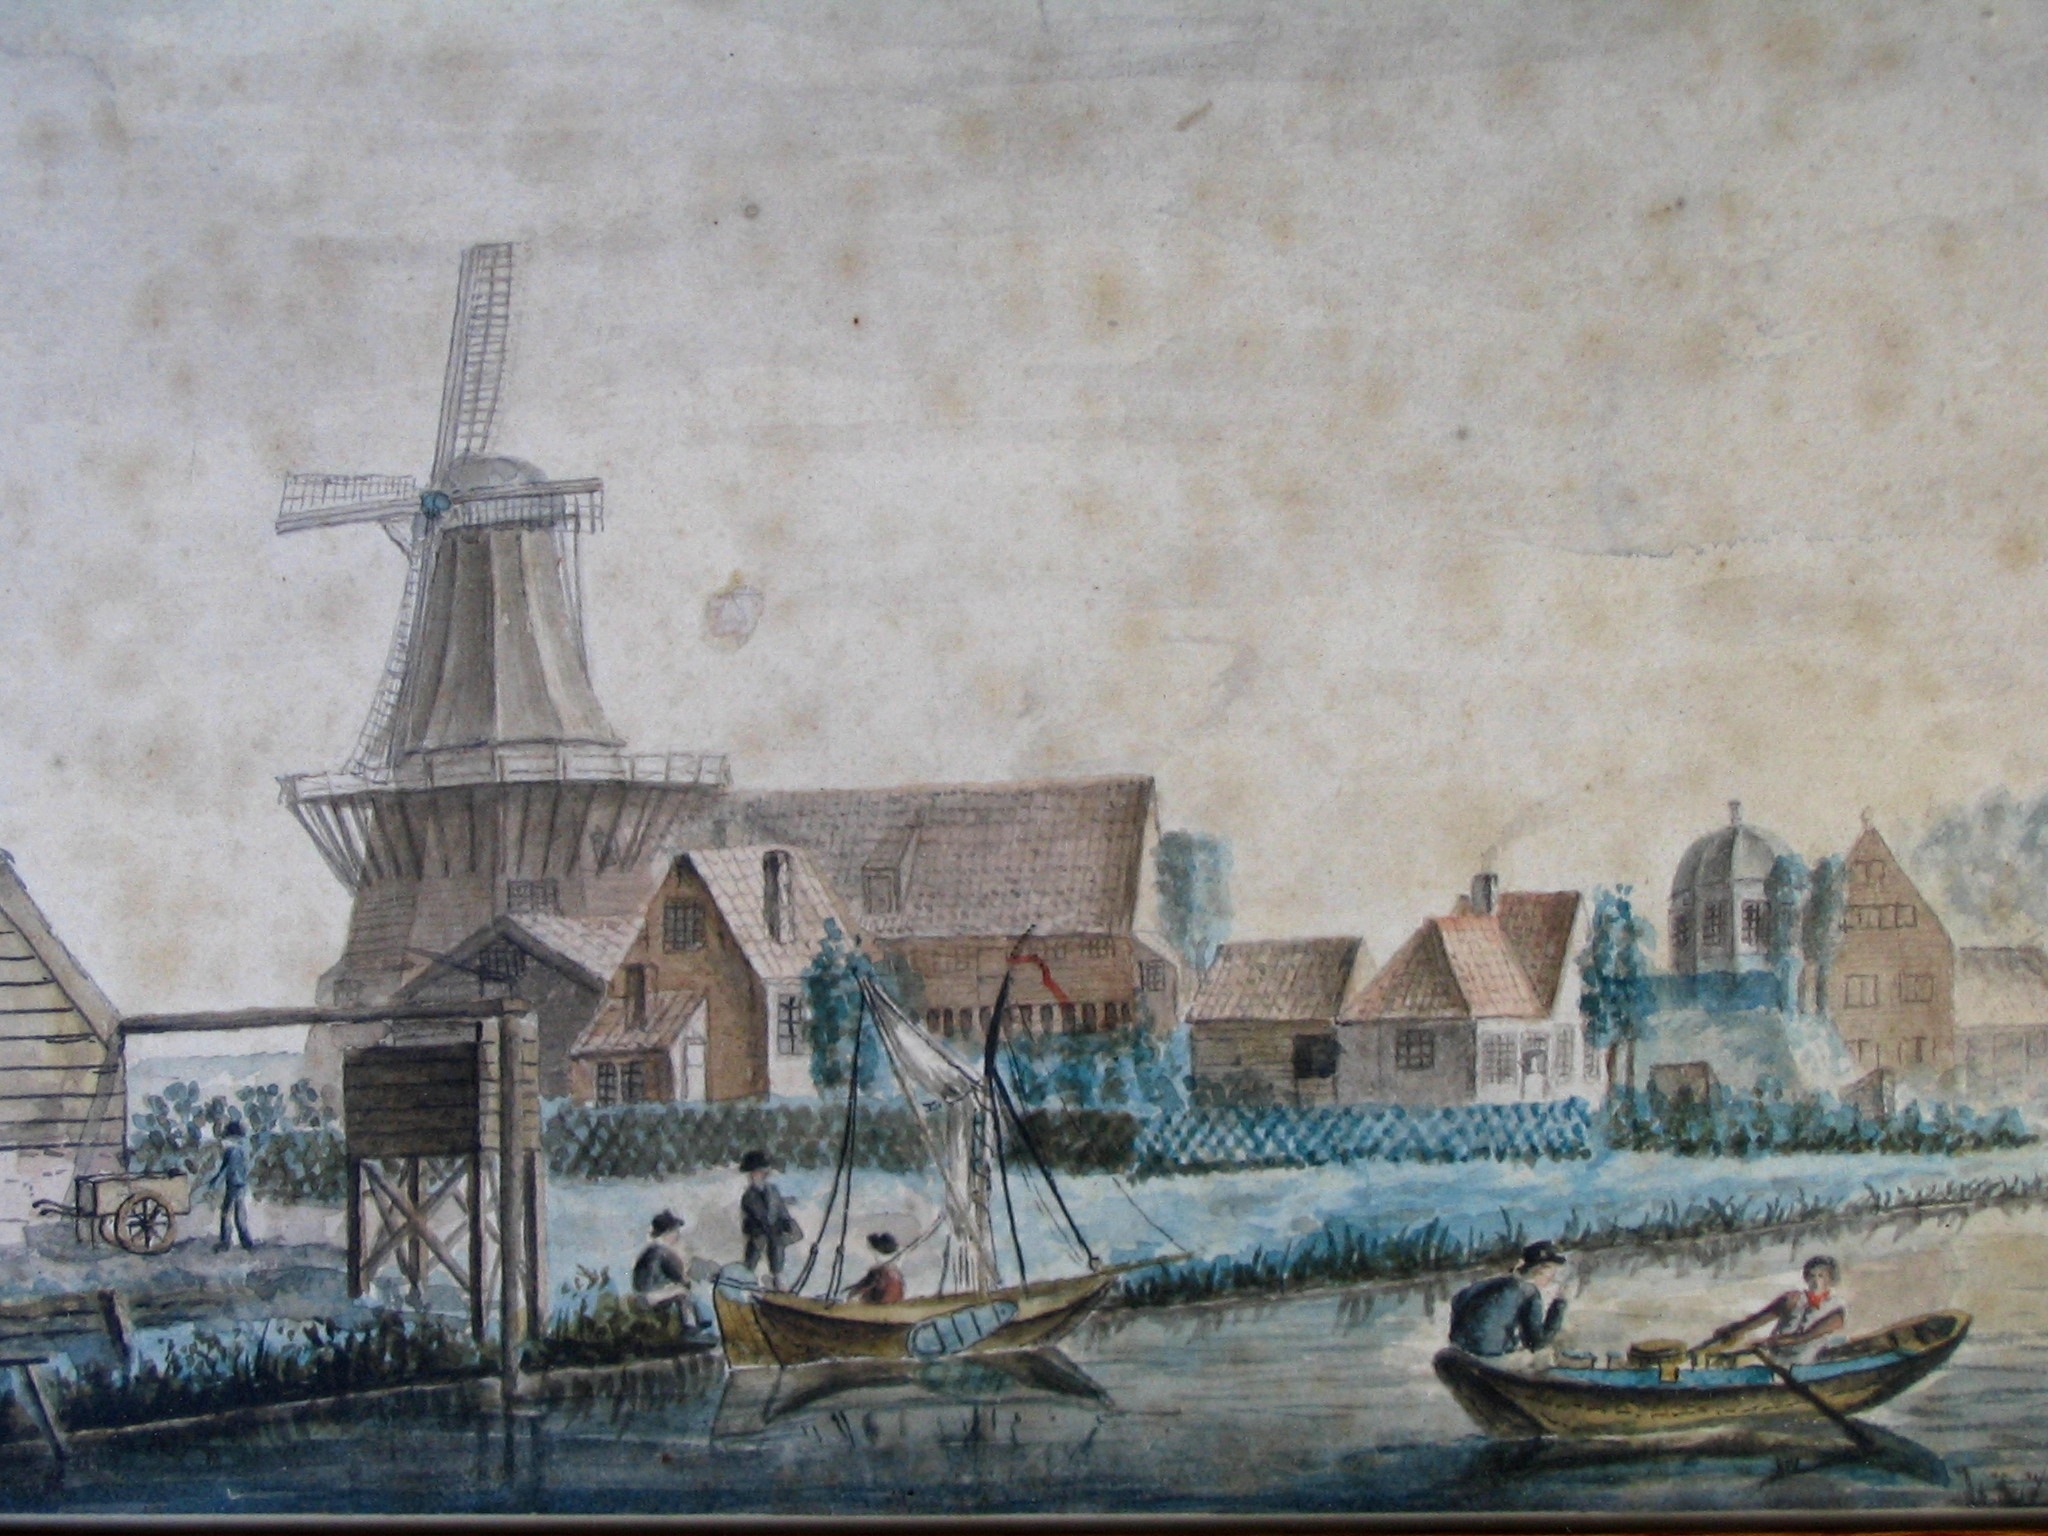  Bedrijfsgebouwen aan de haven, detail van een havengezicht door G. Braam, 1840. HMDB.